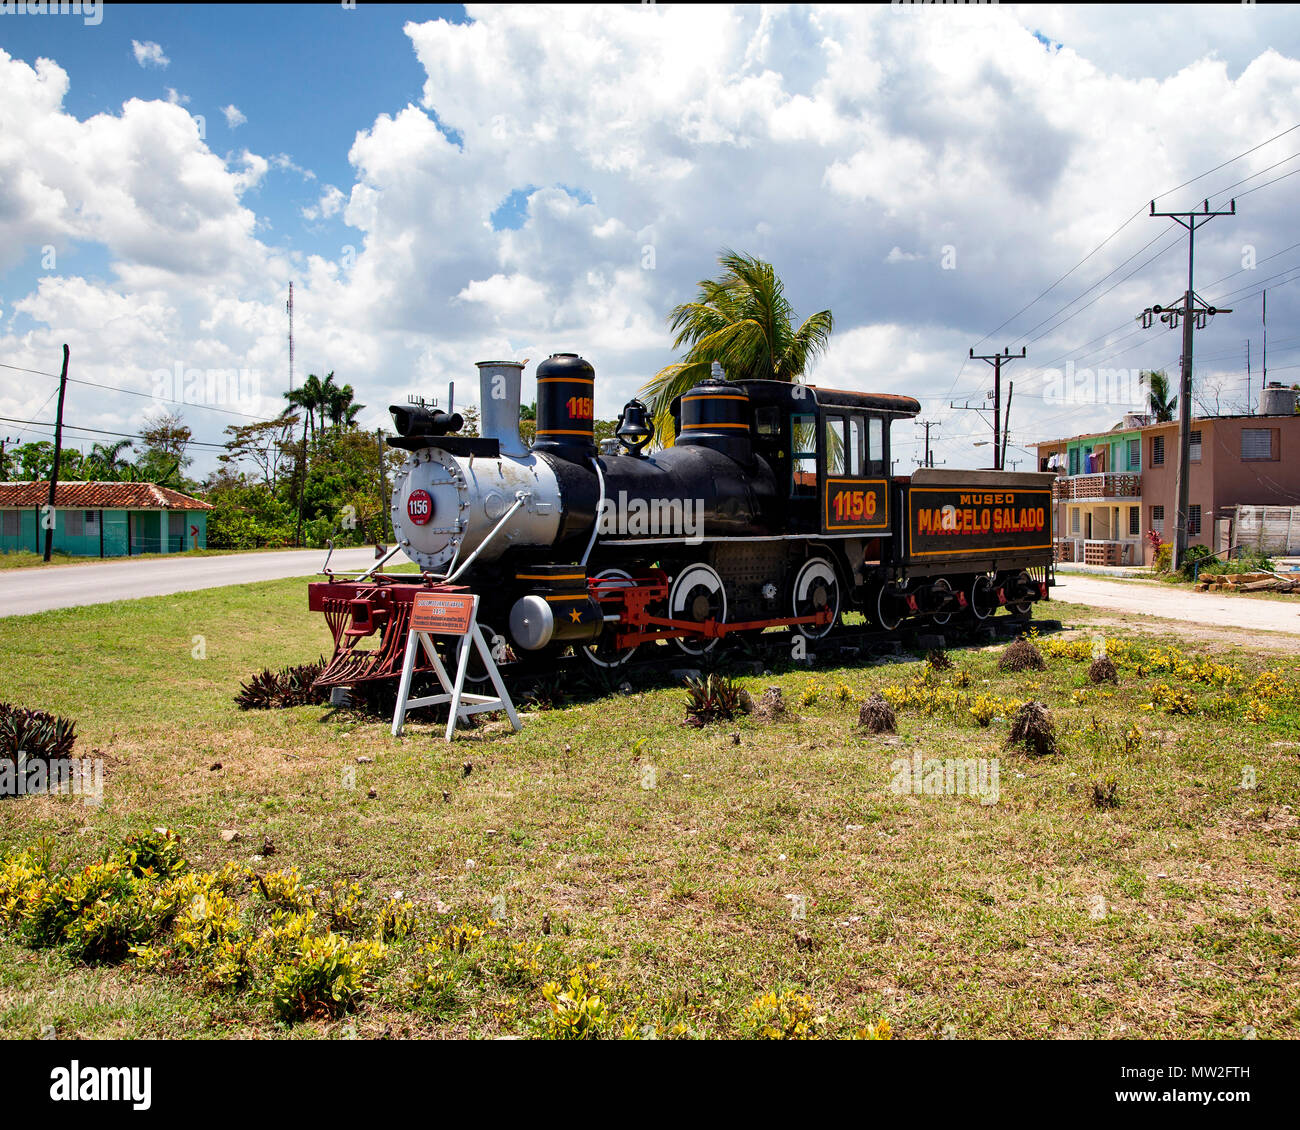 Uno dei 4-6-0 locomotive a vapore che utilizzato per lavorare la canna da zucchero il traffico esterno il vapore e zucchero mill museum vicino a Remedios, Cuba Foto Stock